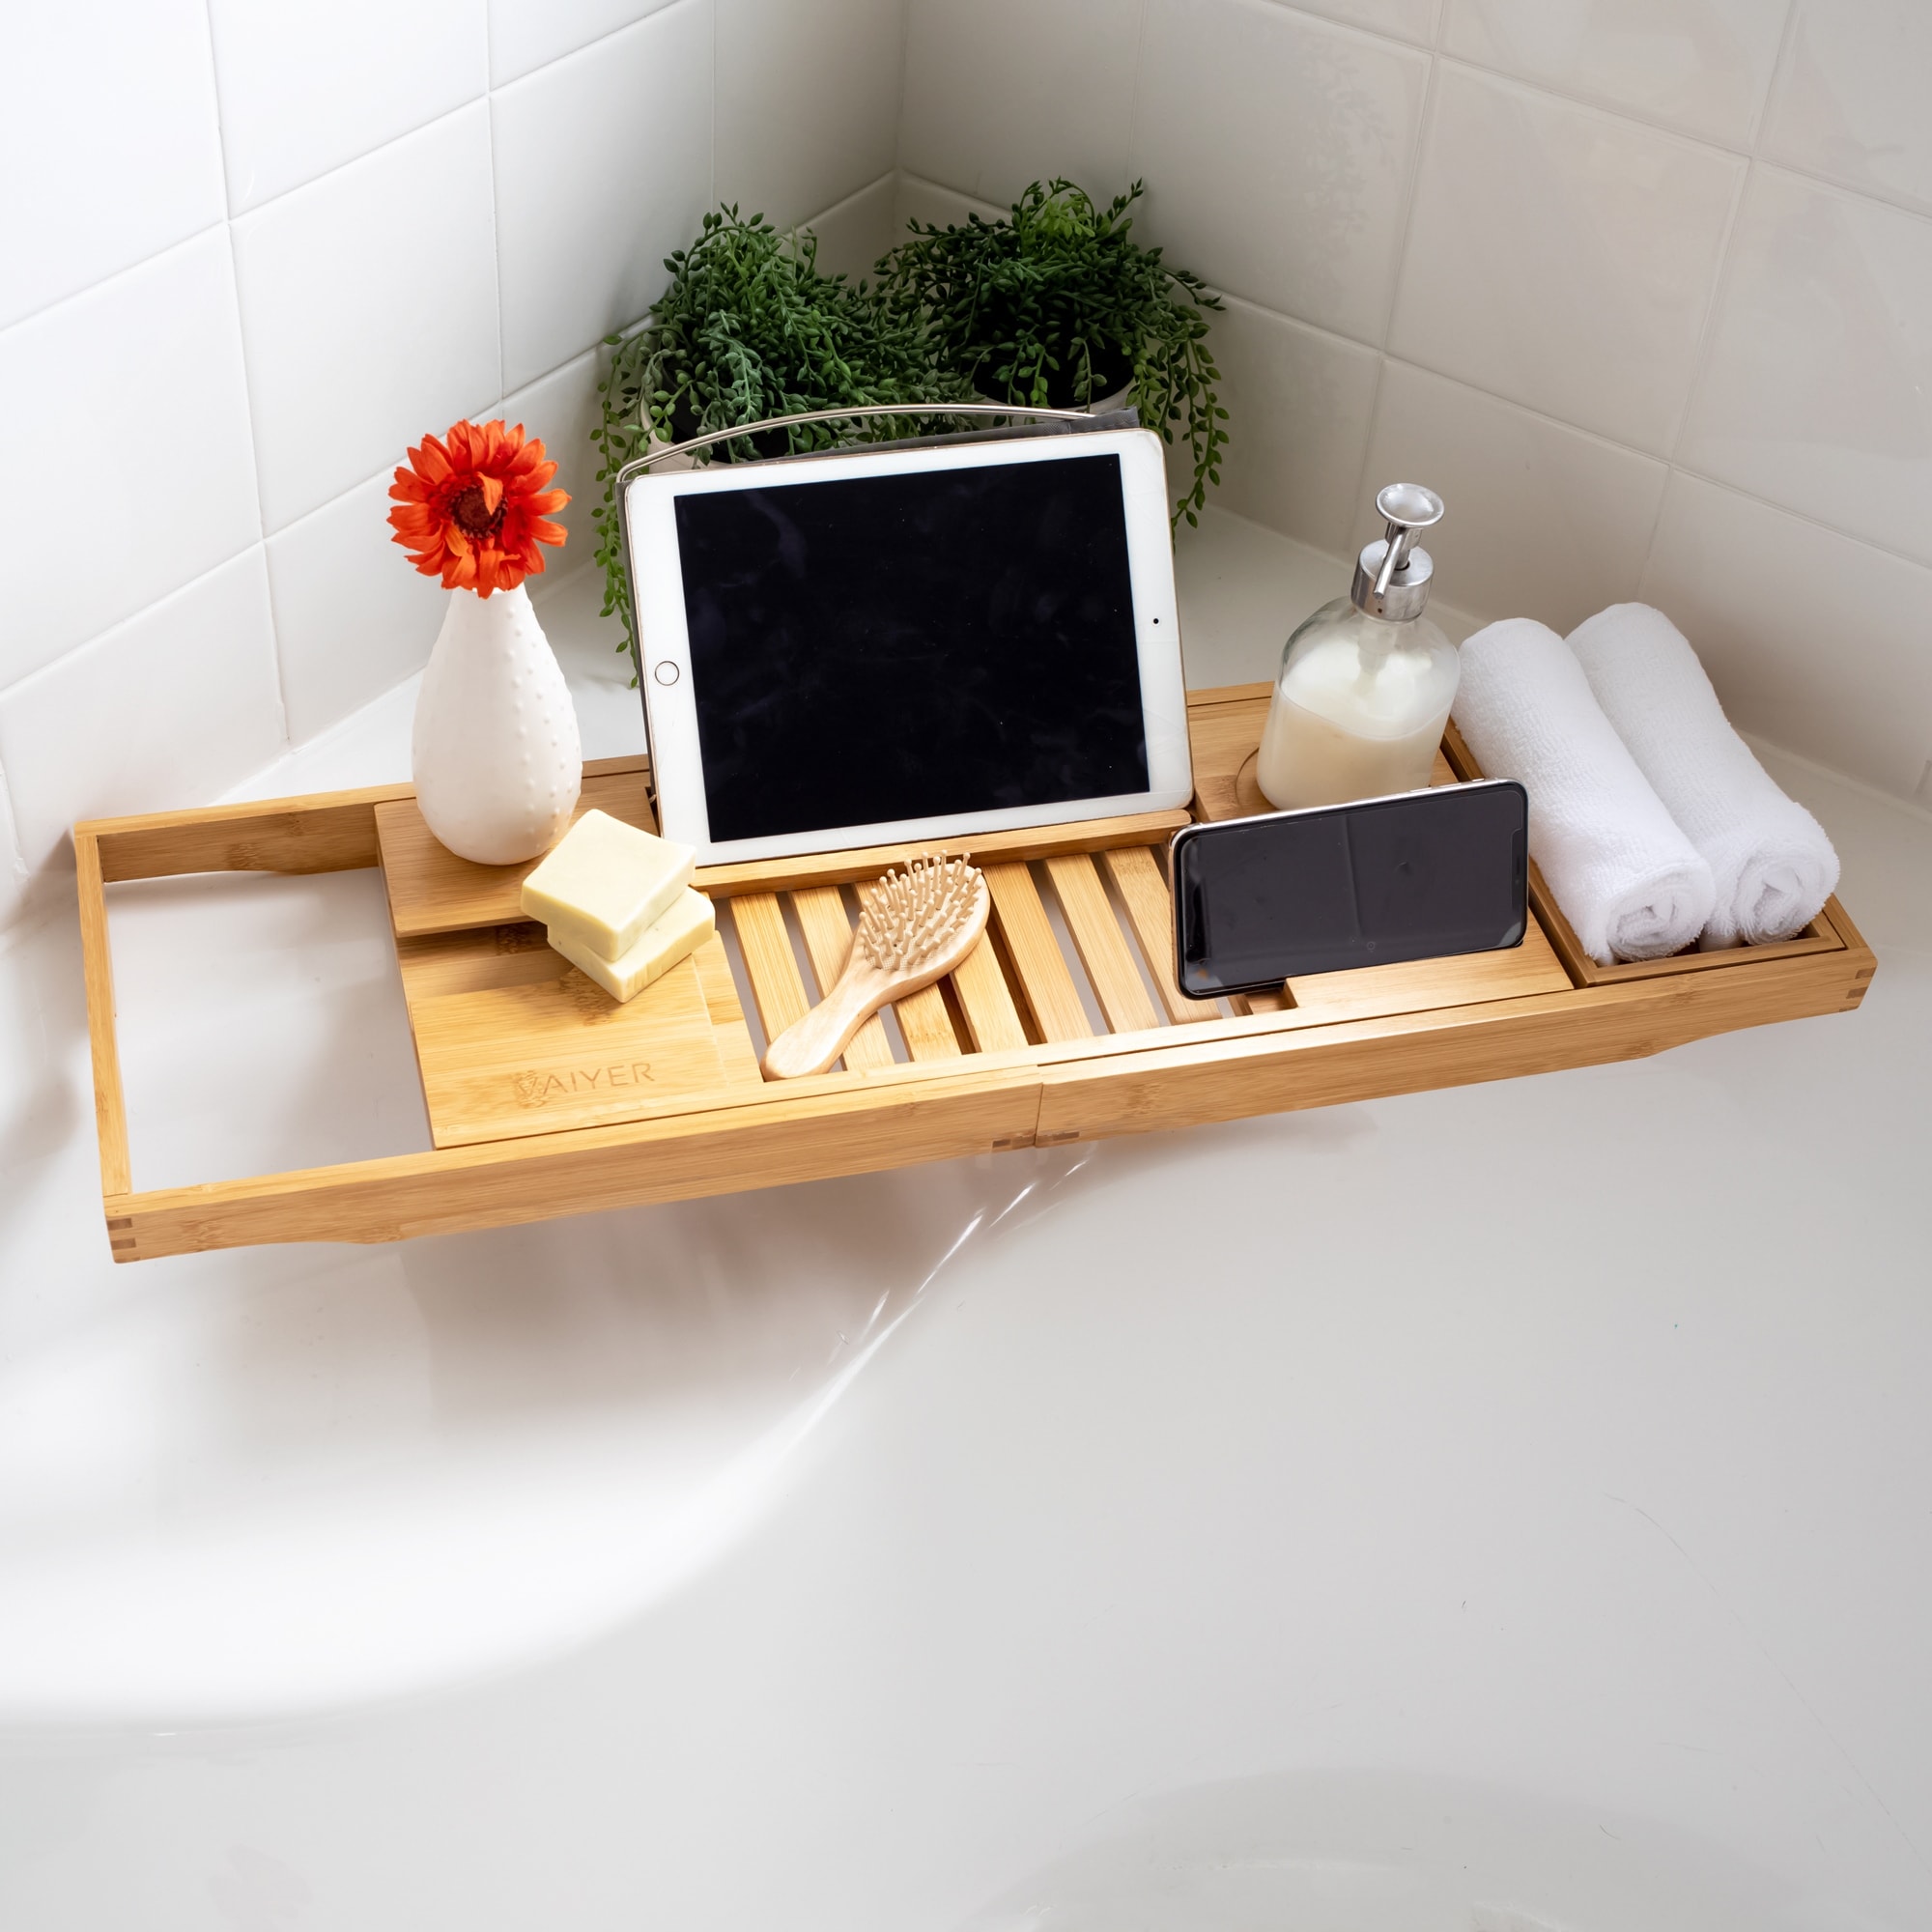 Bathroom Caddy Organizer & Bathtub Tray Product Holder - Bed Bath & Beyond  - 39740873